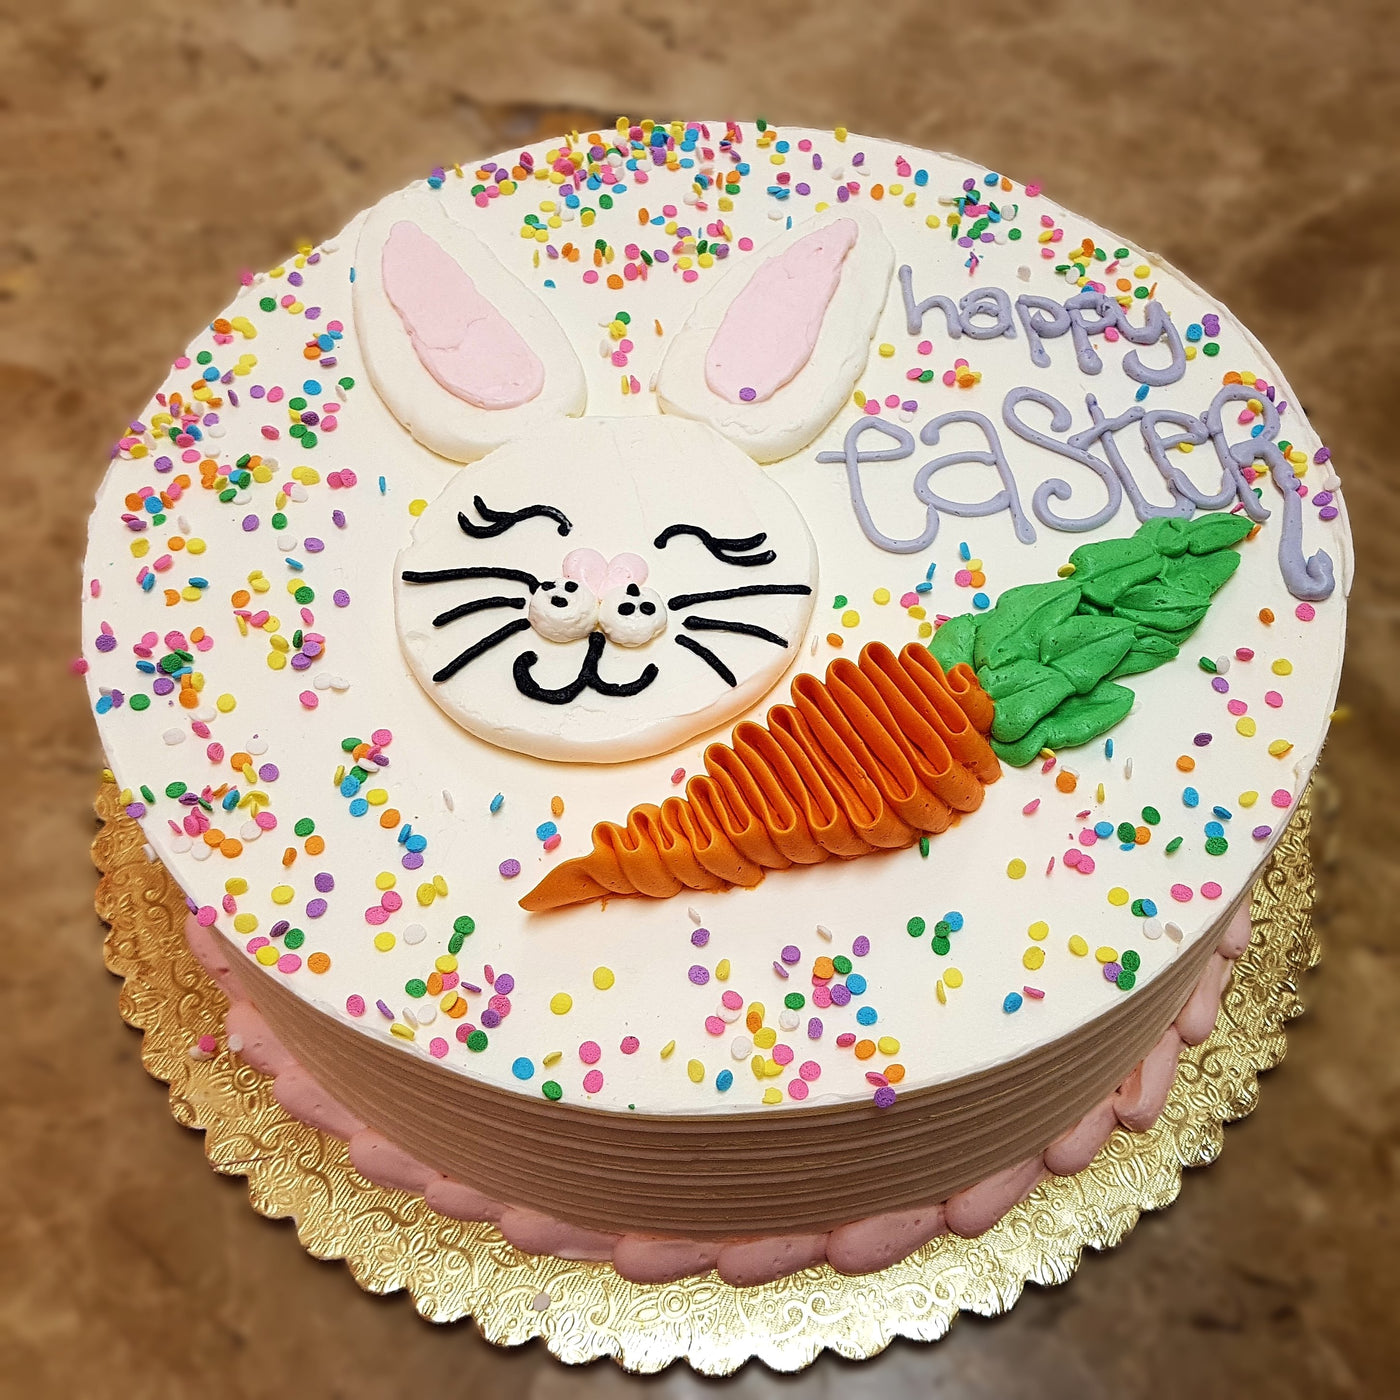 hoppy easter, easter bunny, easter rabbit, cute cake